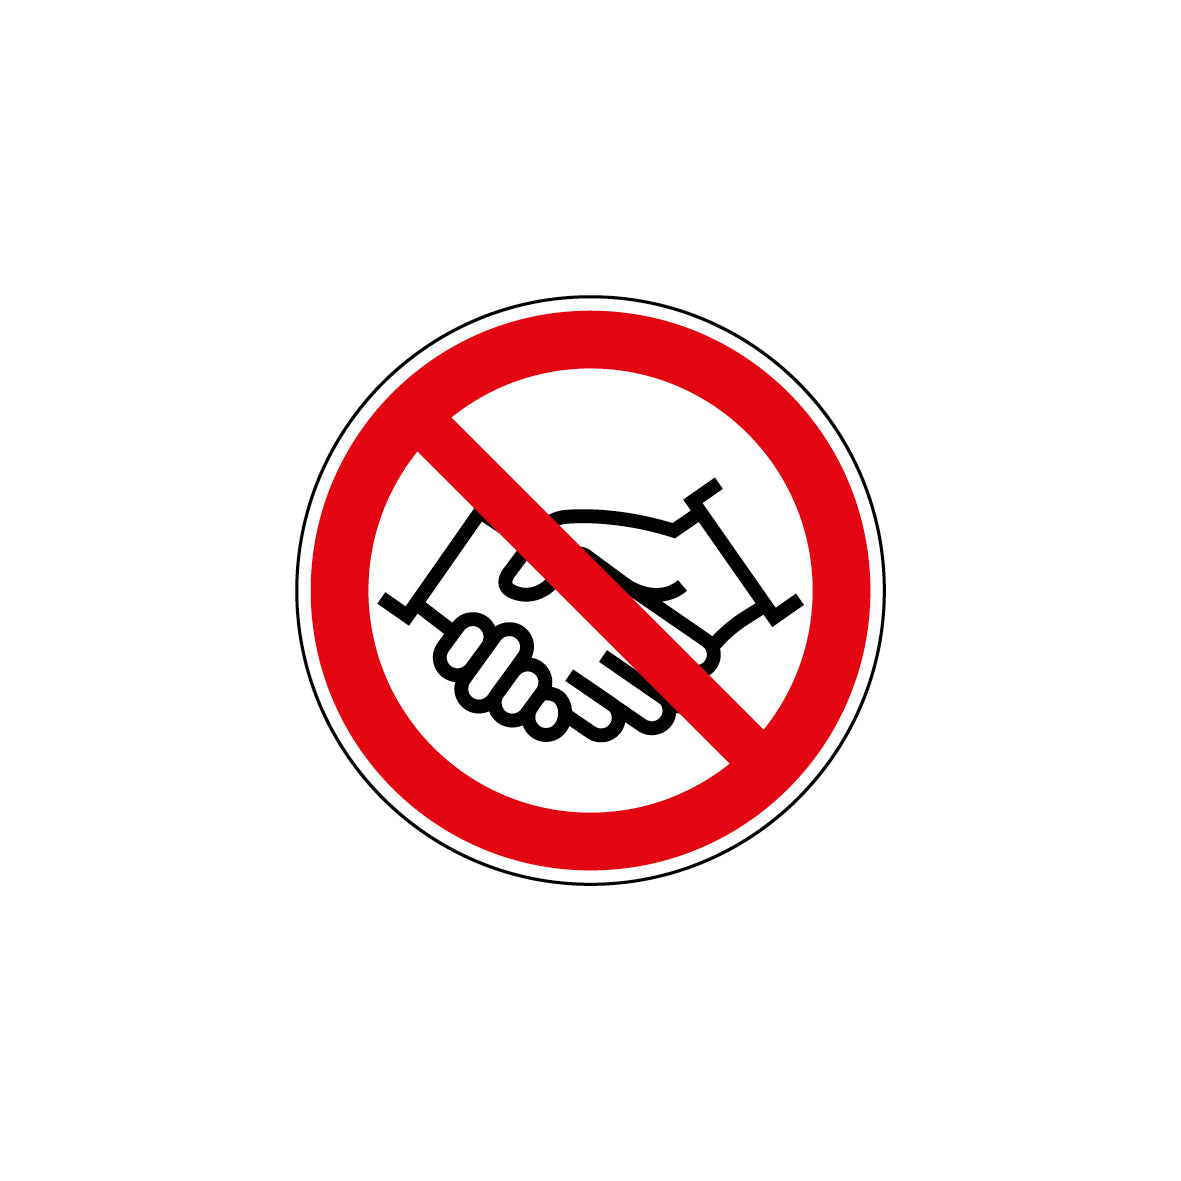 6.V-969 Hände schütteln verboten, Verbotszeichen, Praxisbewährt